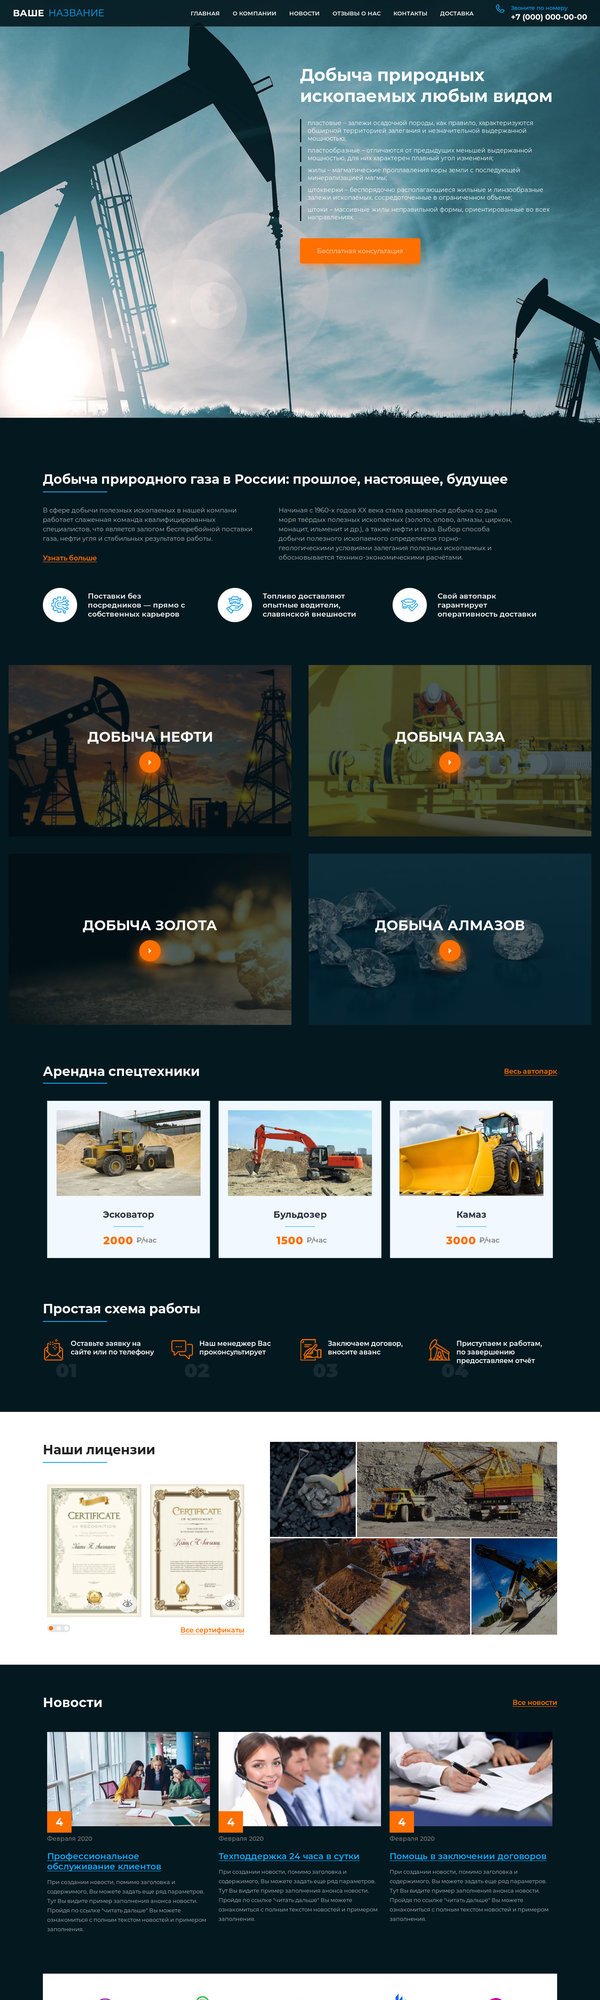 Готовый Сайт-Бизнес № 2715007 - Добыча газа, нефти, золота, угля (Десктопная версия)